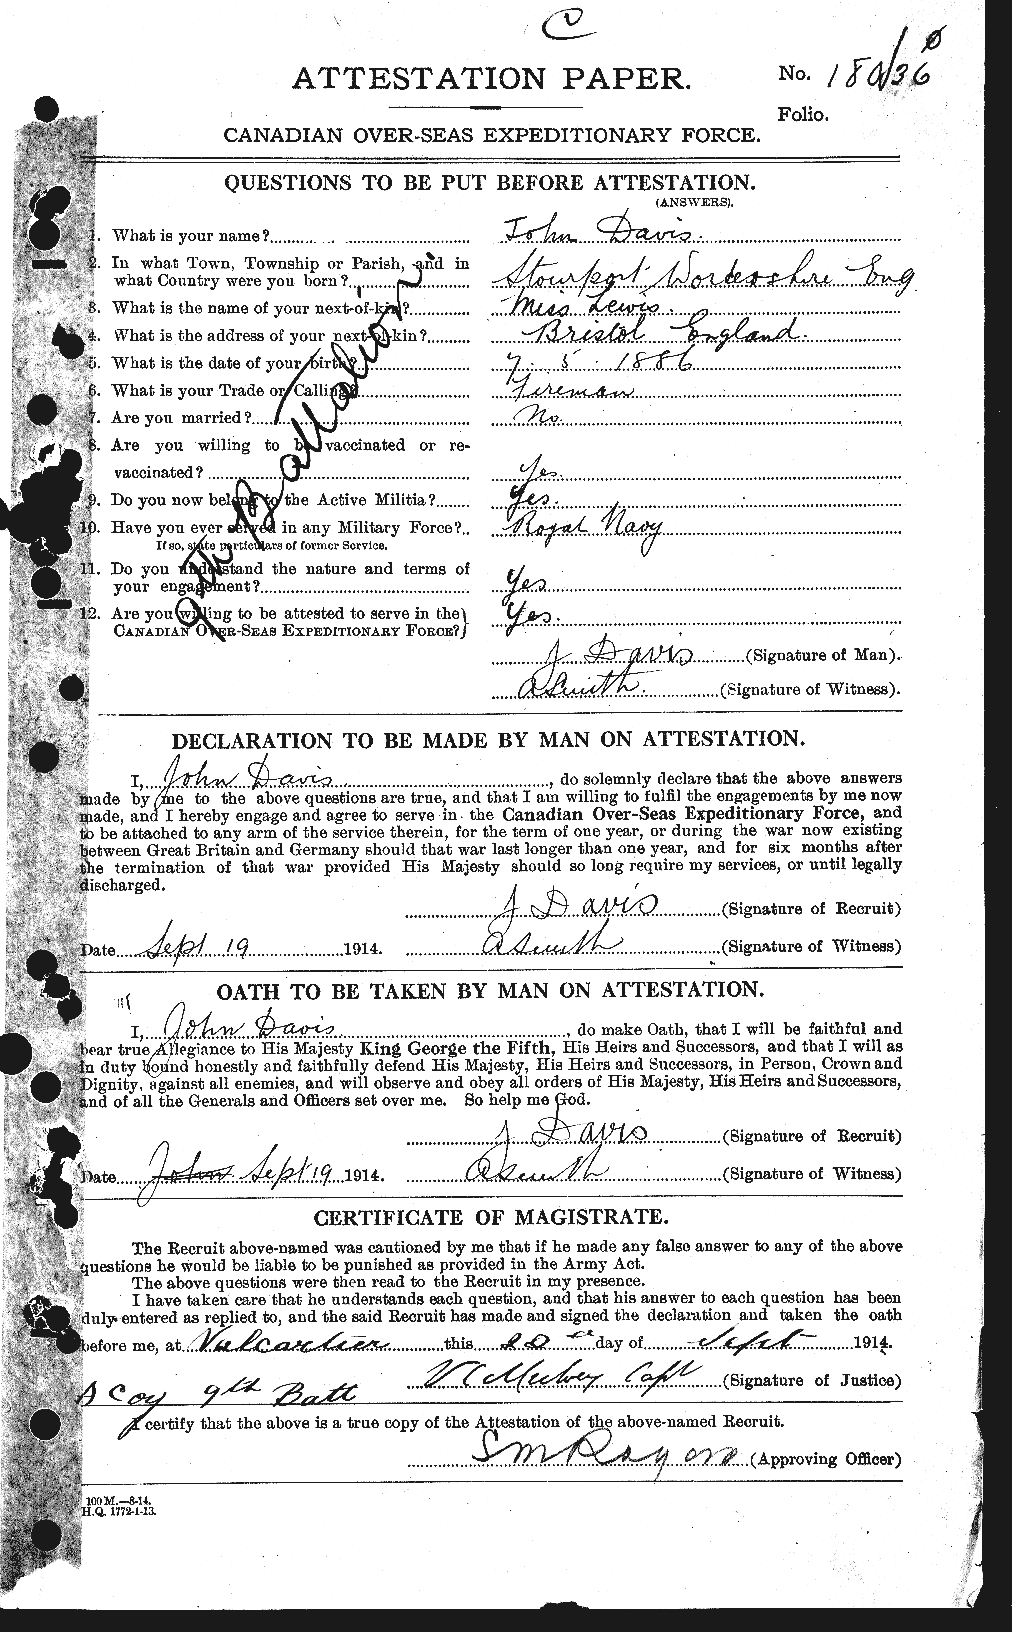 Dossiers du Personnel de la Première Guerre mondiale - CEC 284053a